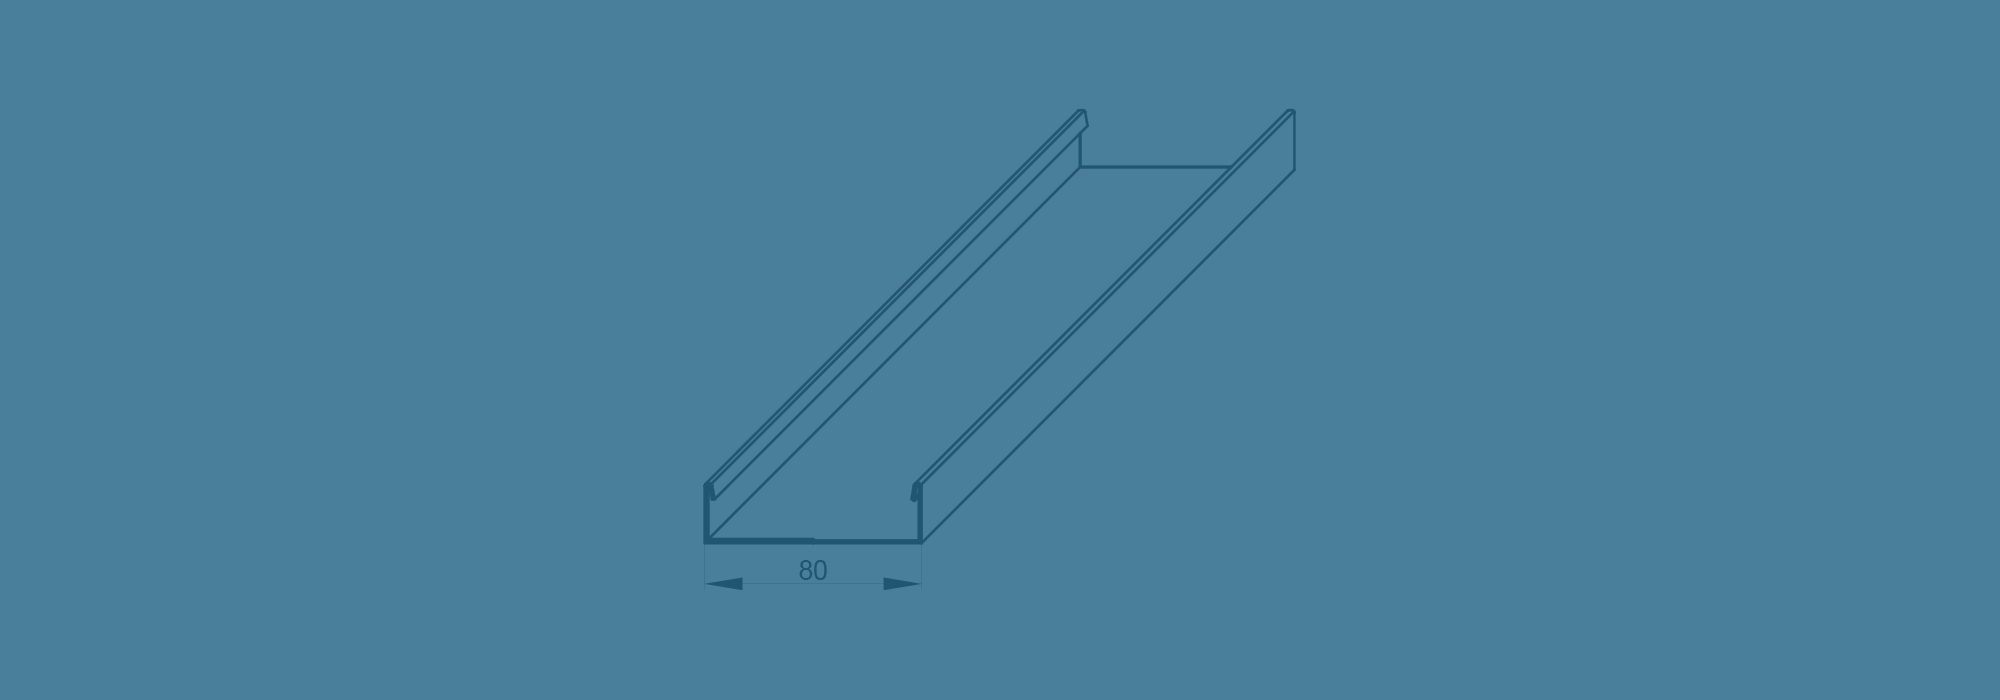 Ударопрочная сталь — панель для спортзалов DW 80/20